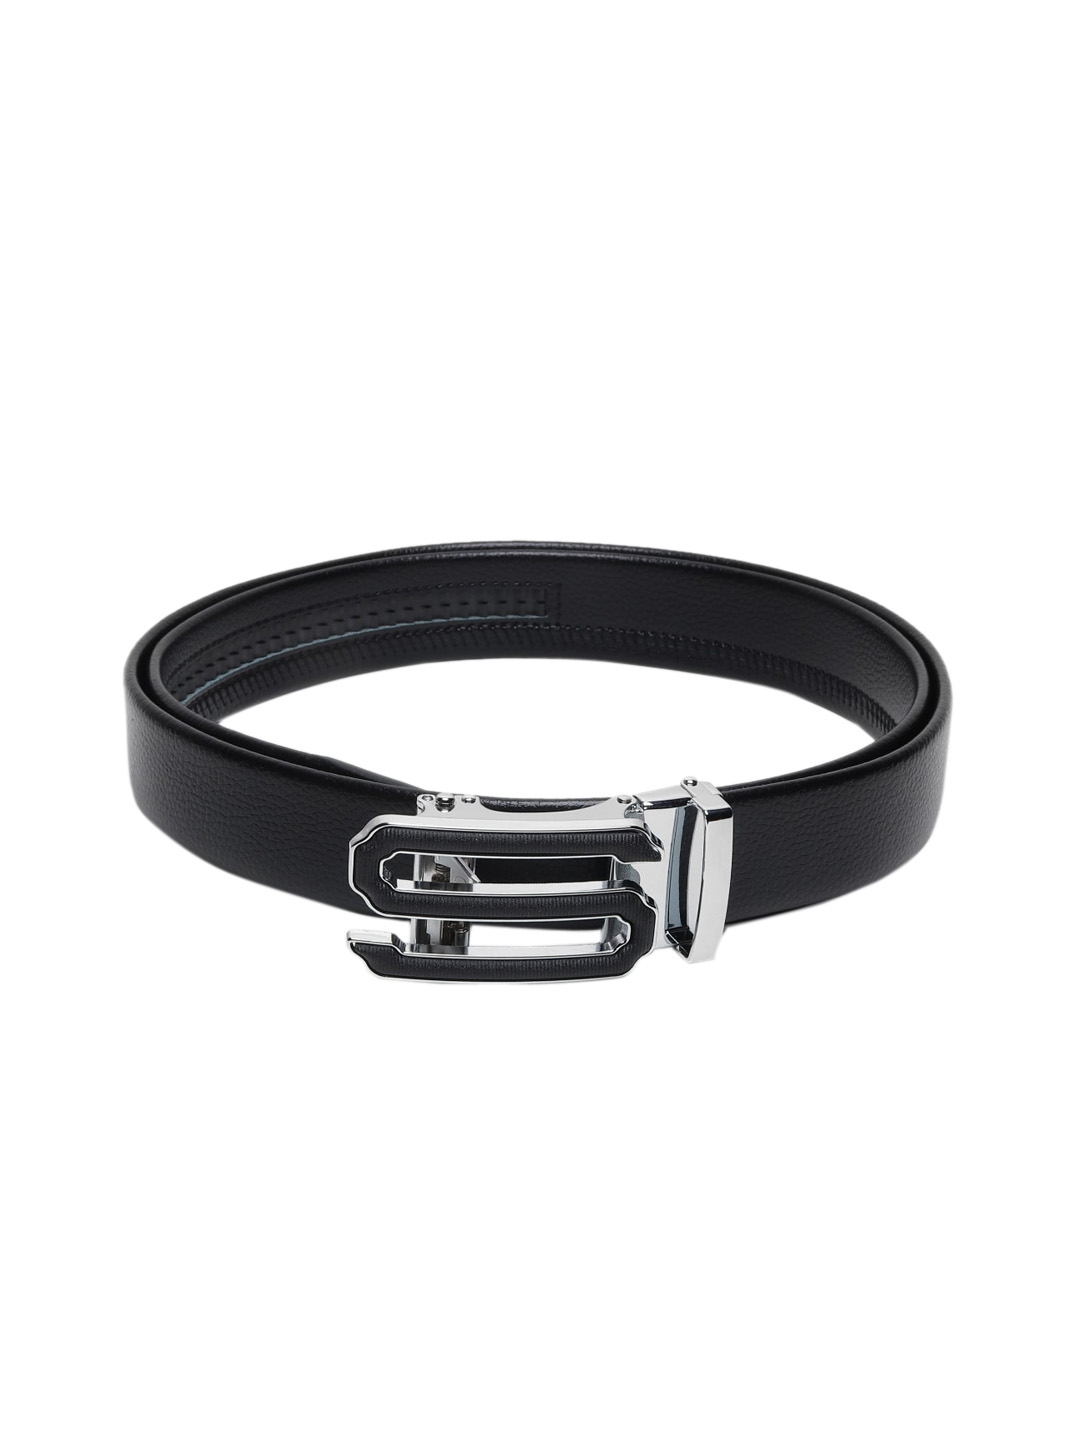 Buy Elite Crafts Men Silver Toned Leather Formal Belt - Belts for Men ...